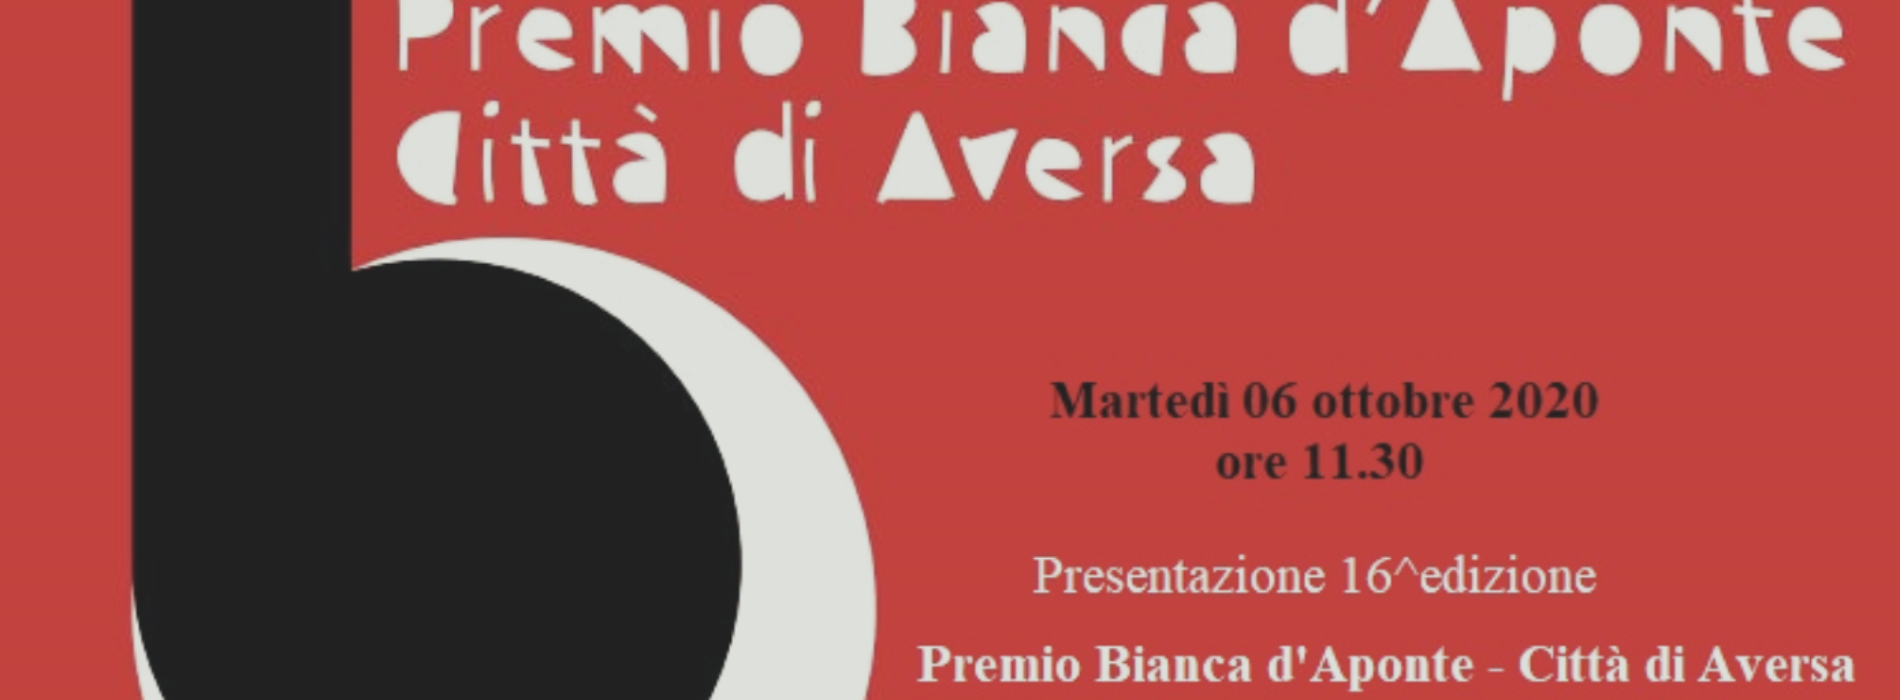 Premio Bianca d’Aponte, la presentazione in videoconferenza